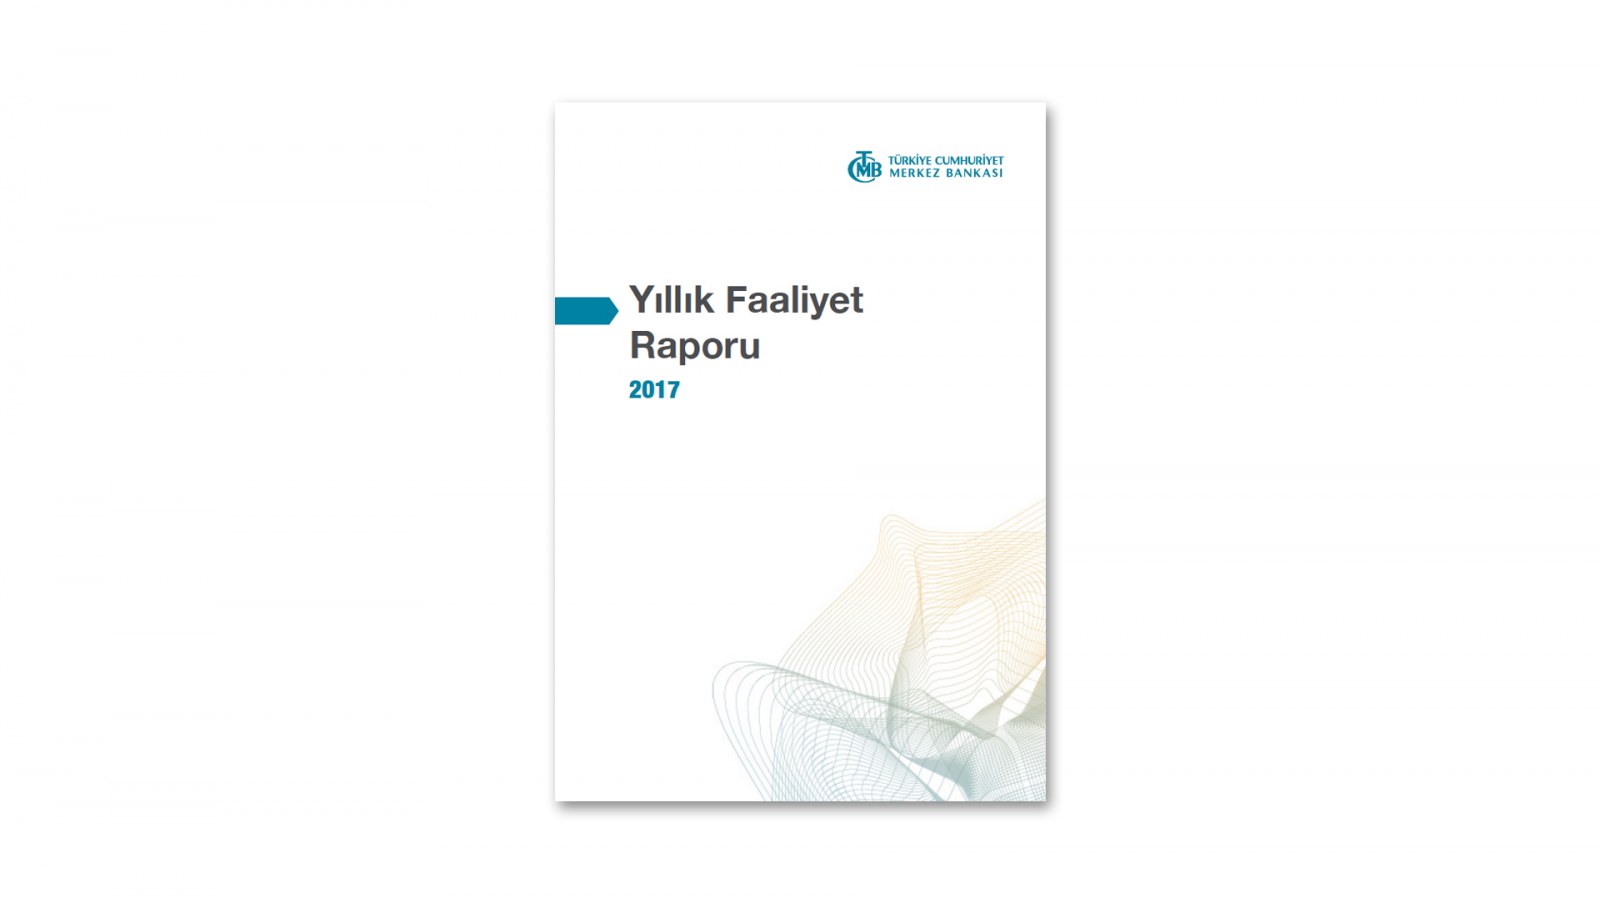 T.C. MERKEZ BANKASI / 2017 Faaliyet Raporu / 2017 Annual Report